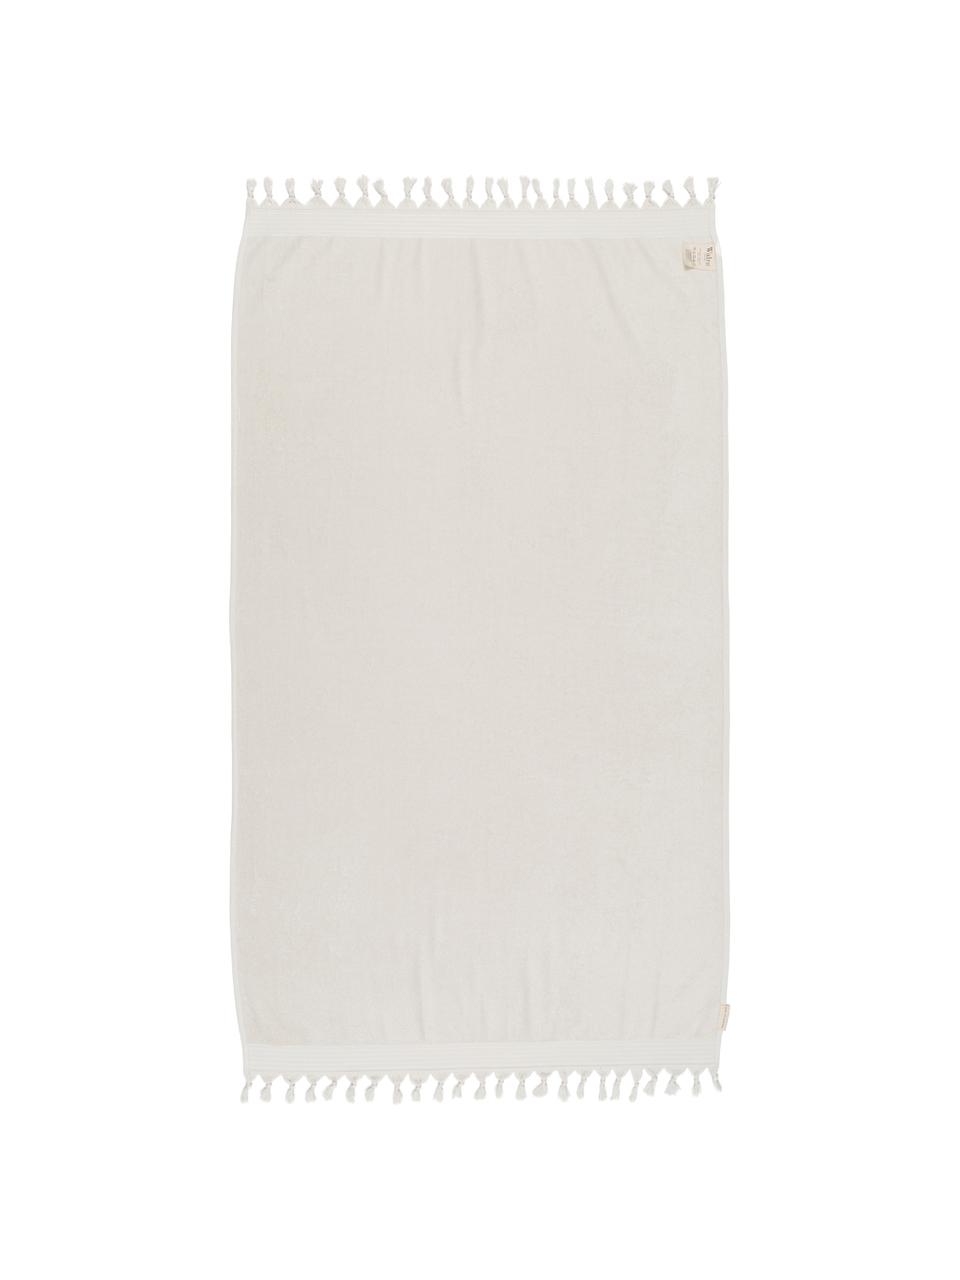 Hamamtuch Soft Cotton mit Frottee-Rückseite, Rückseite: Frottee, Hellbeige, Weiß, 100 x 180 cm